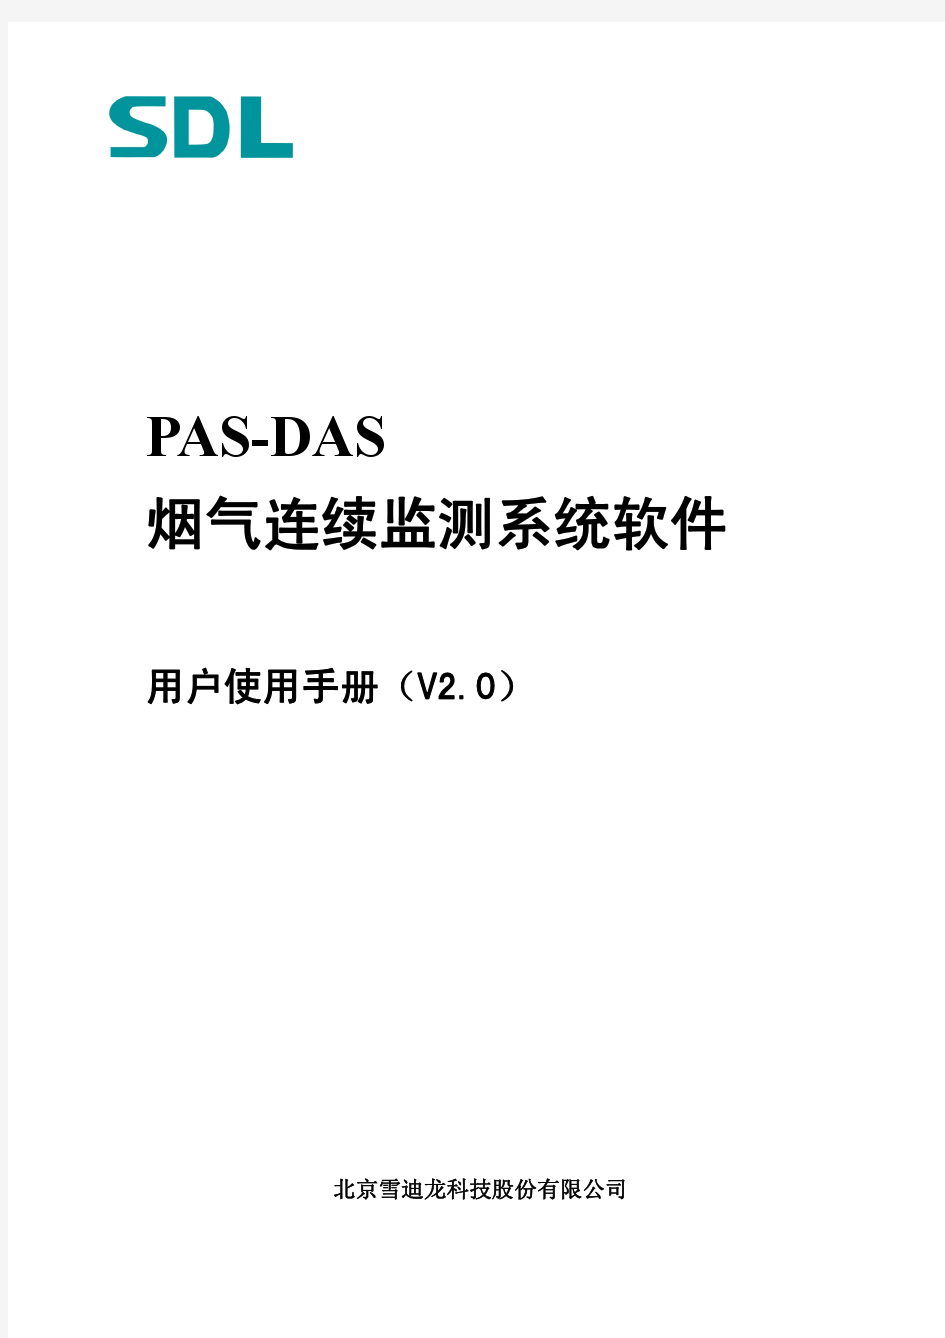 PAS-DAS软件2010用户手册